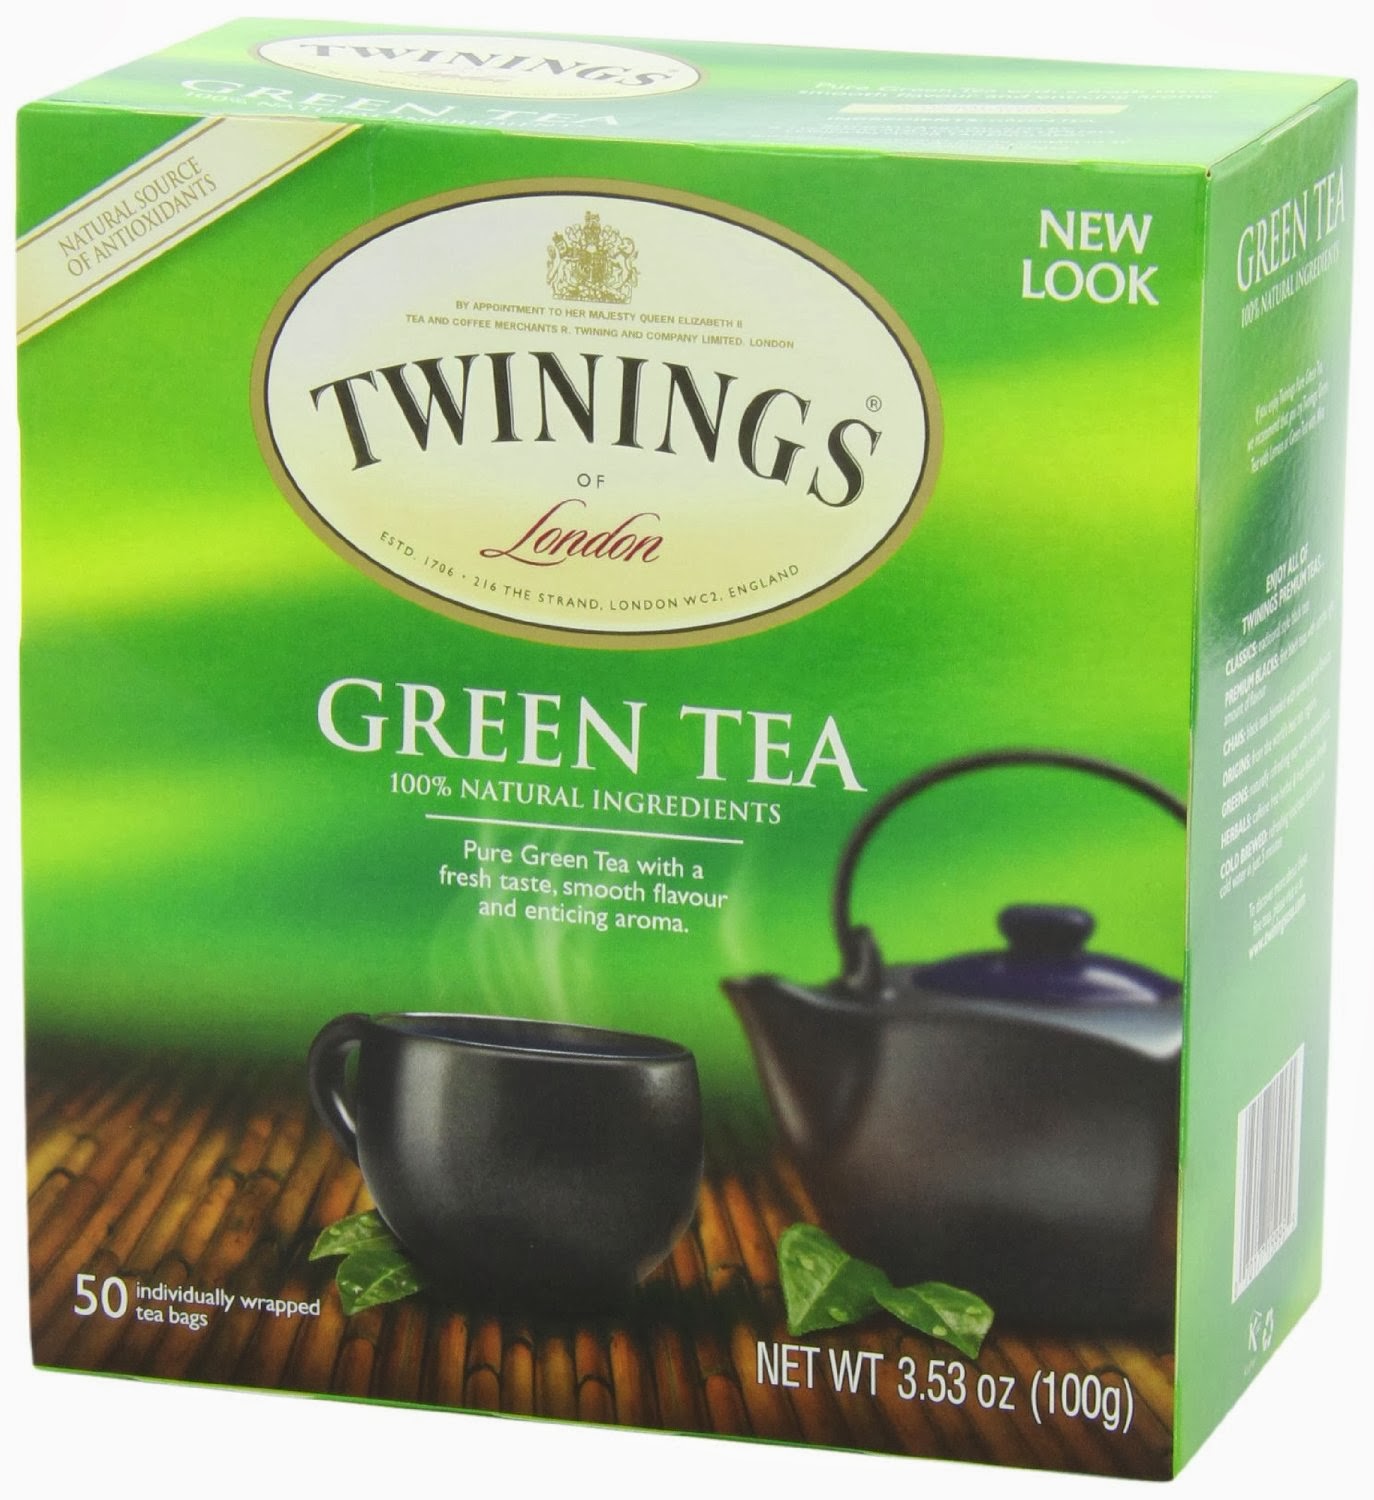 Best green tea brands - best green tea brands